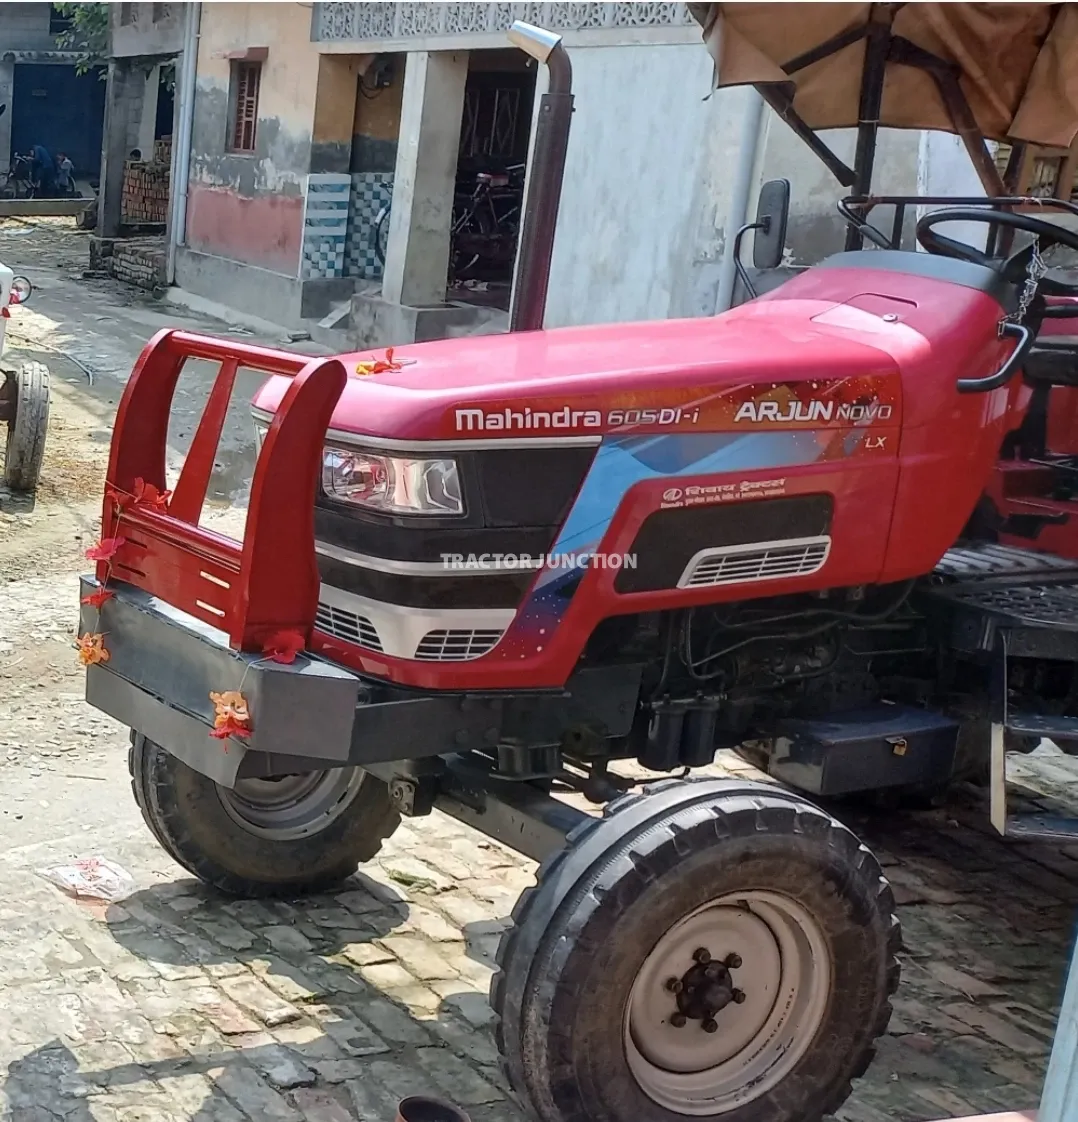 மஹிந்திரா அர்ஜுன் நோவோ 605 Di-i 2WD